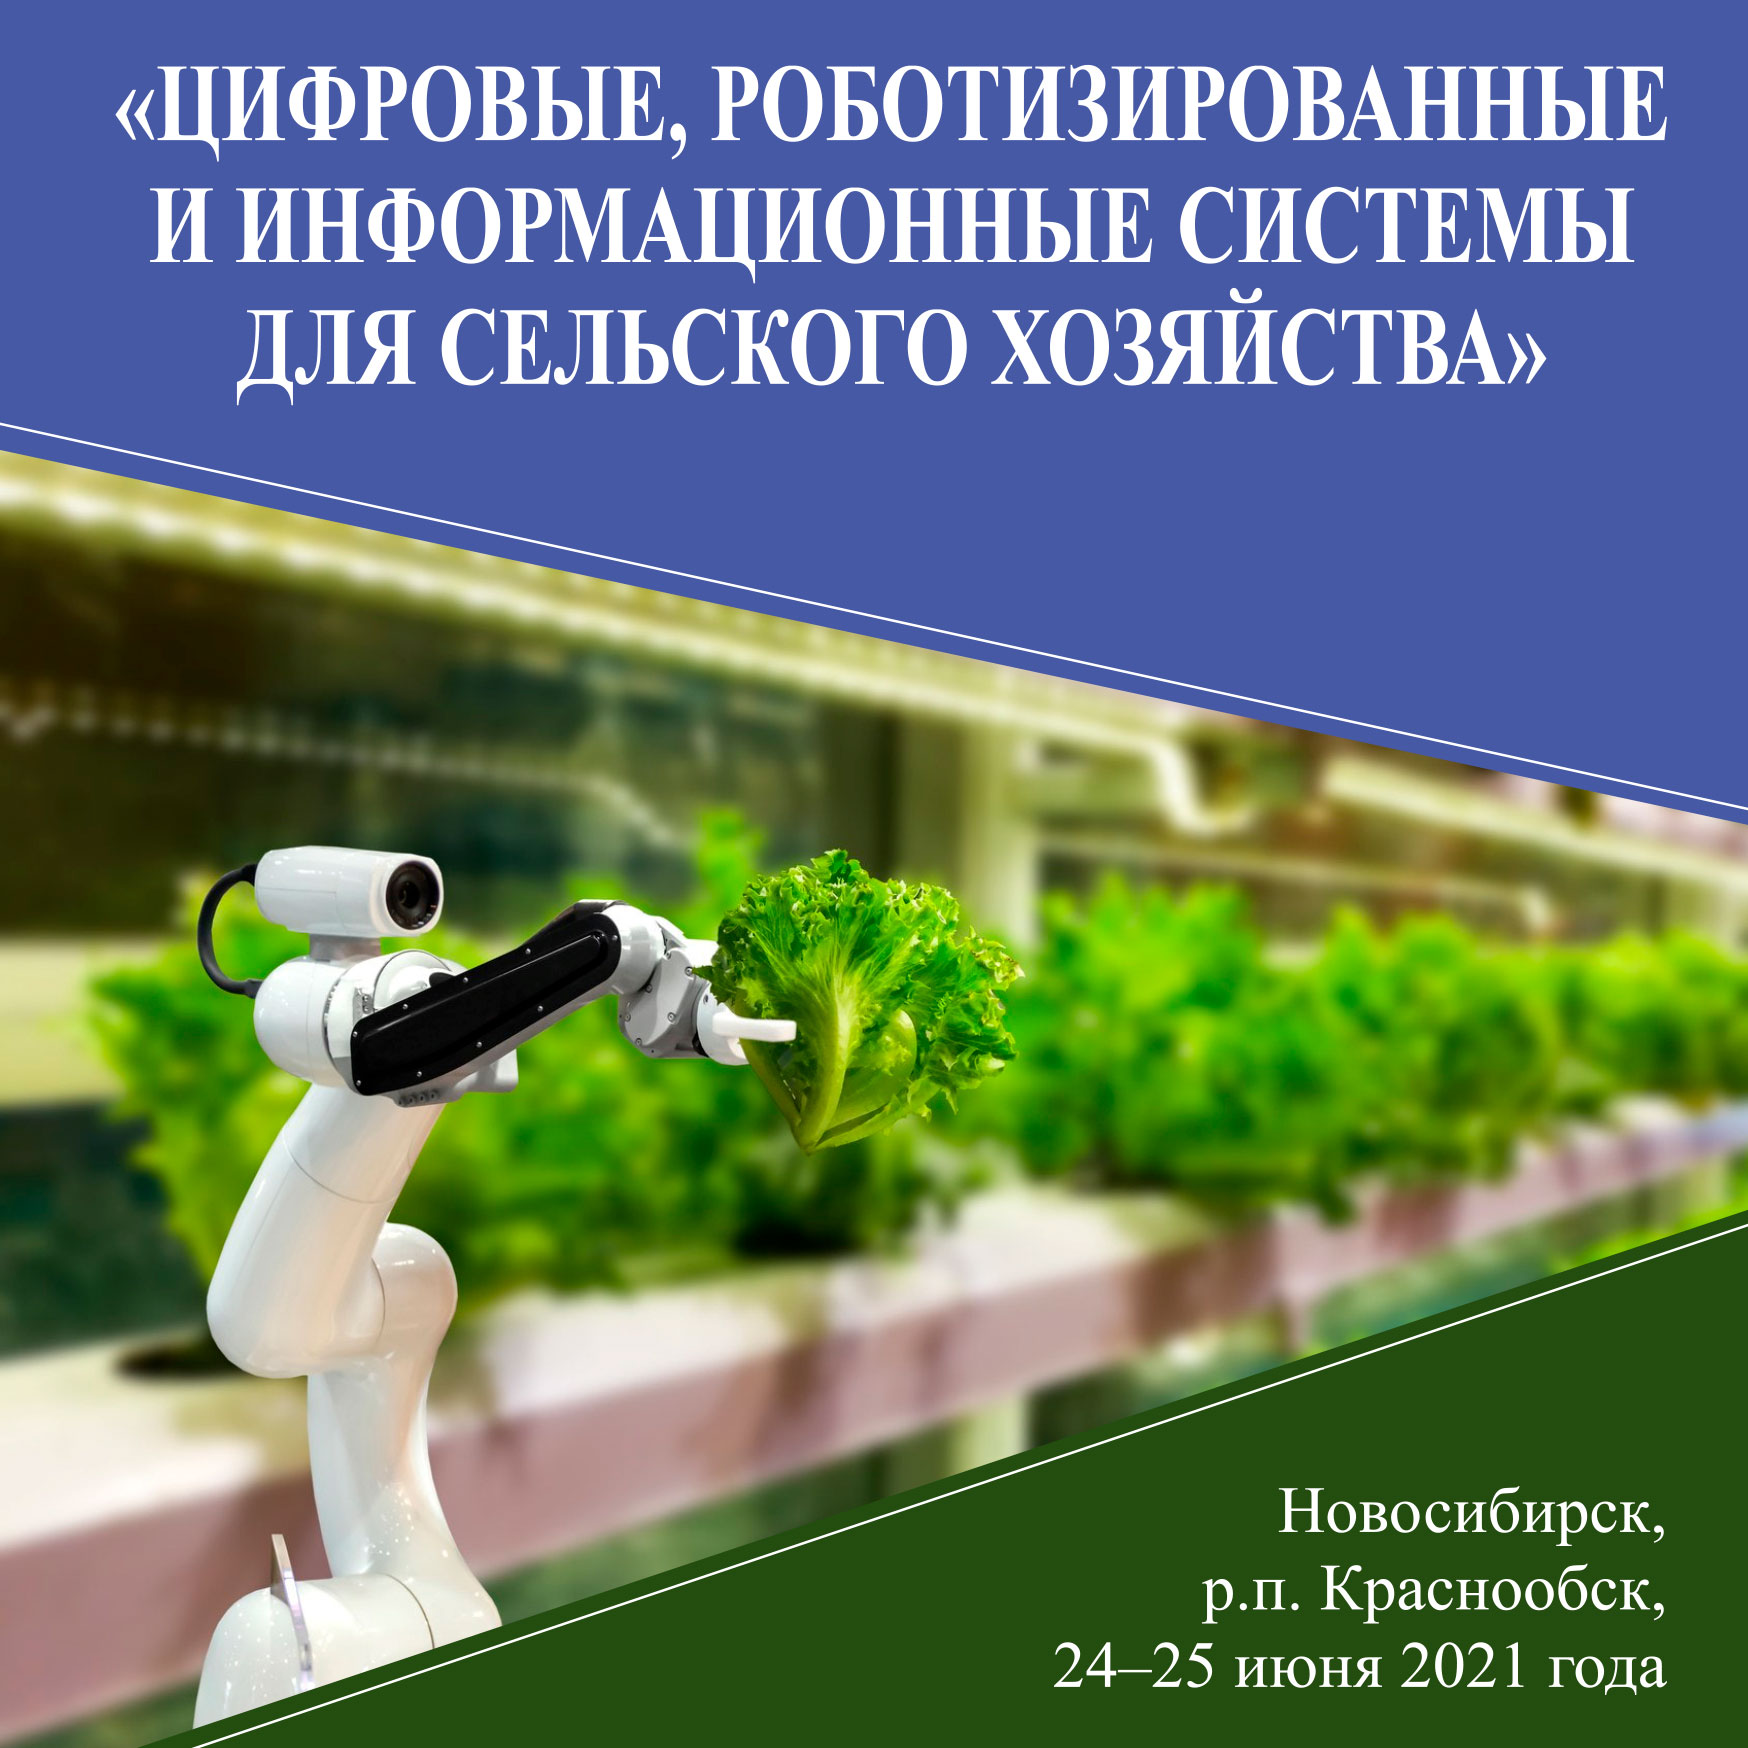 Приглашаем к участию в конференции «Цифровые, роботизированные и информационные системы для сельского хозяйства»